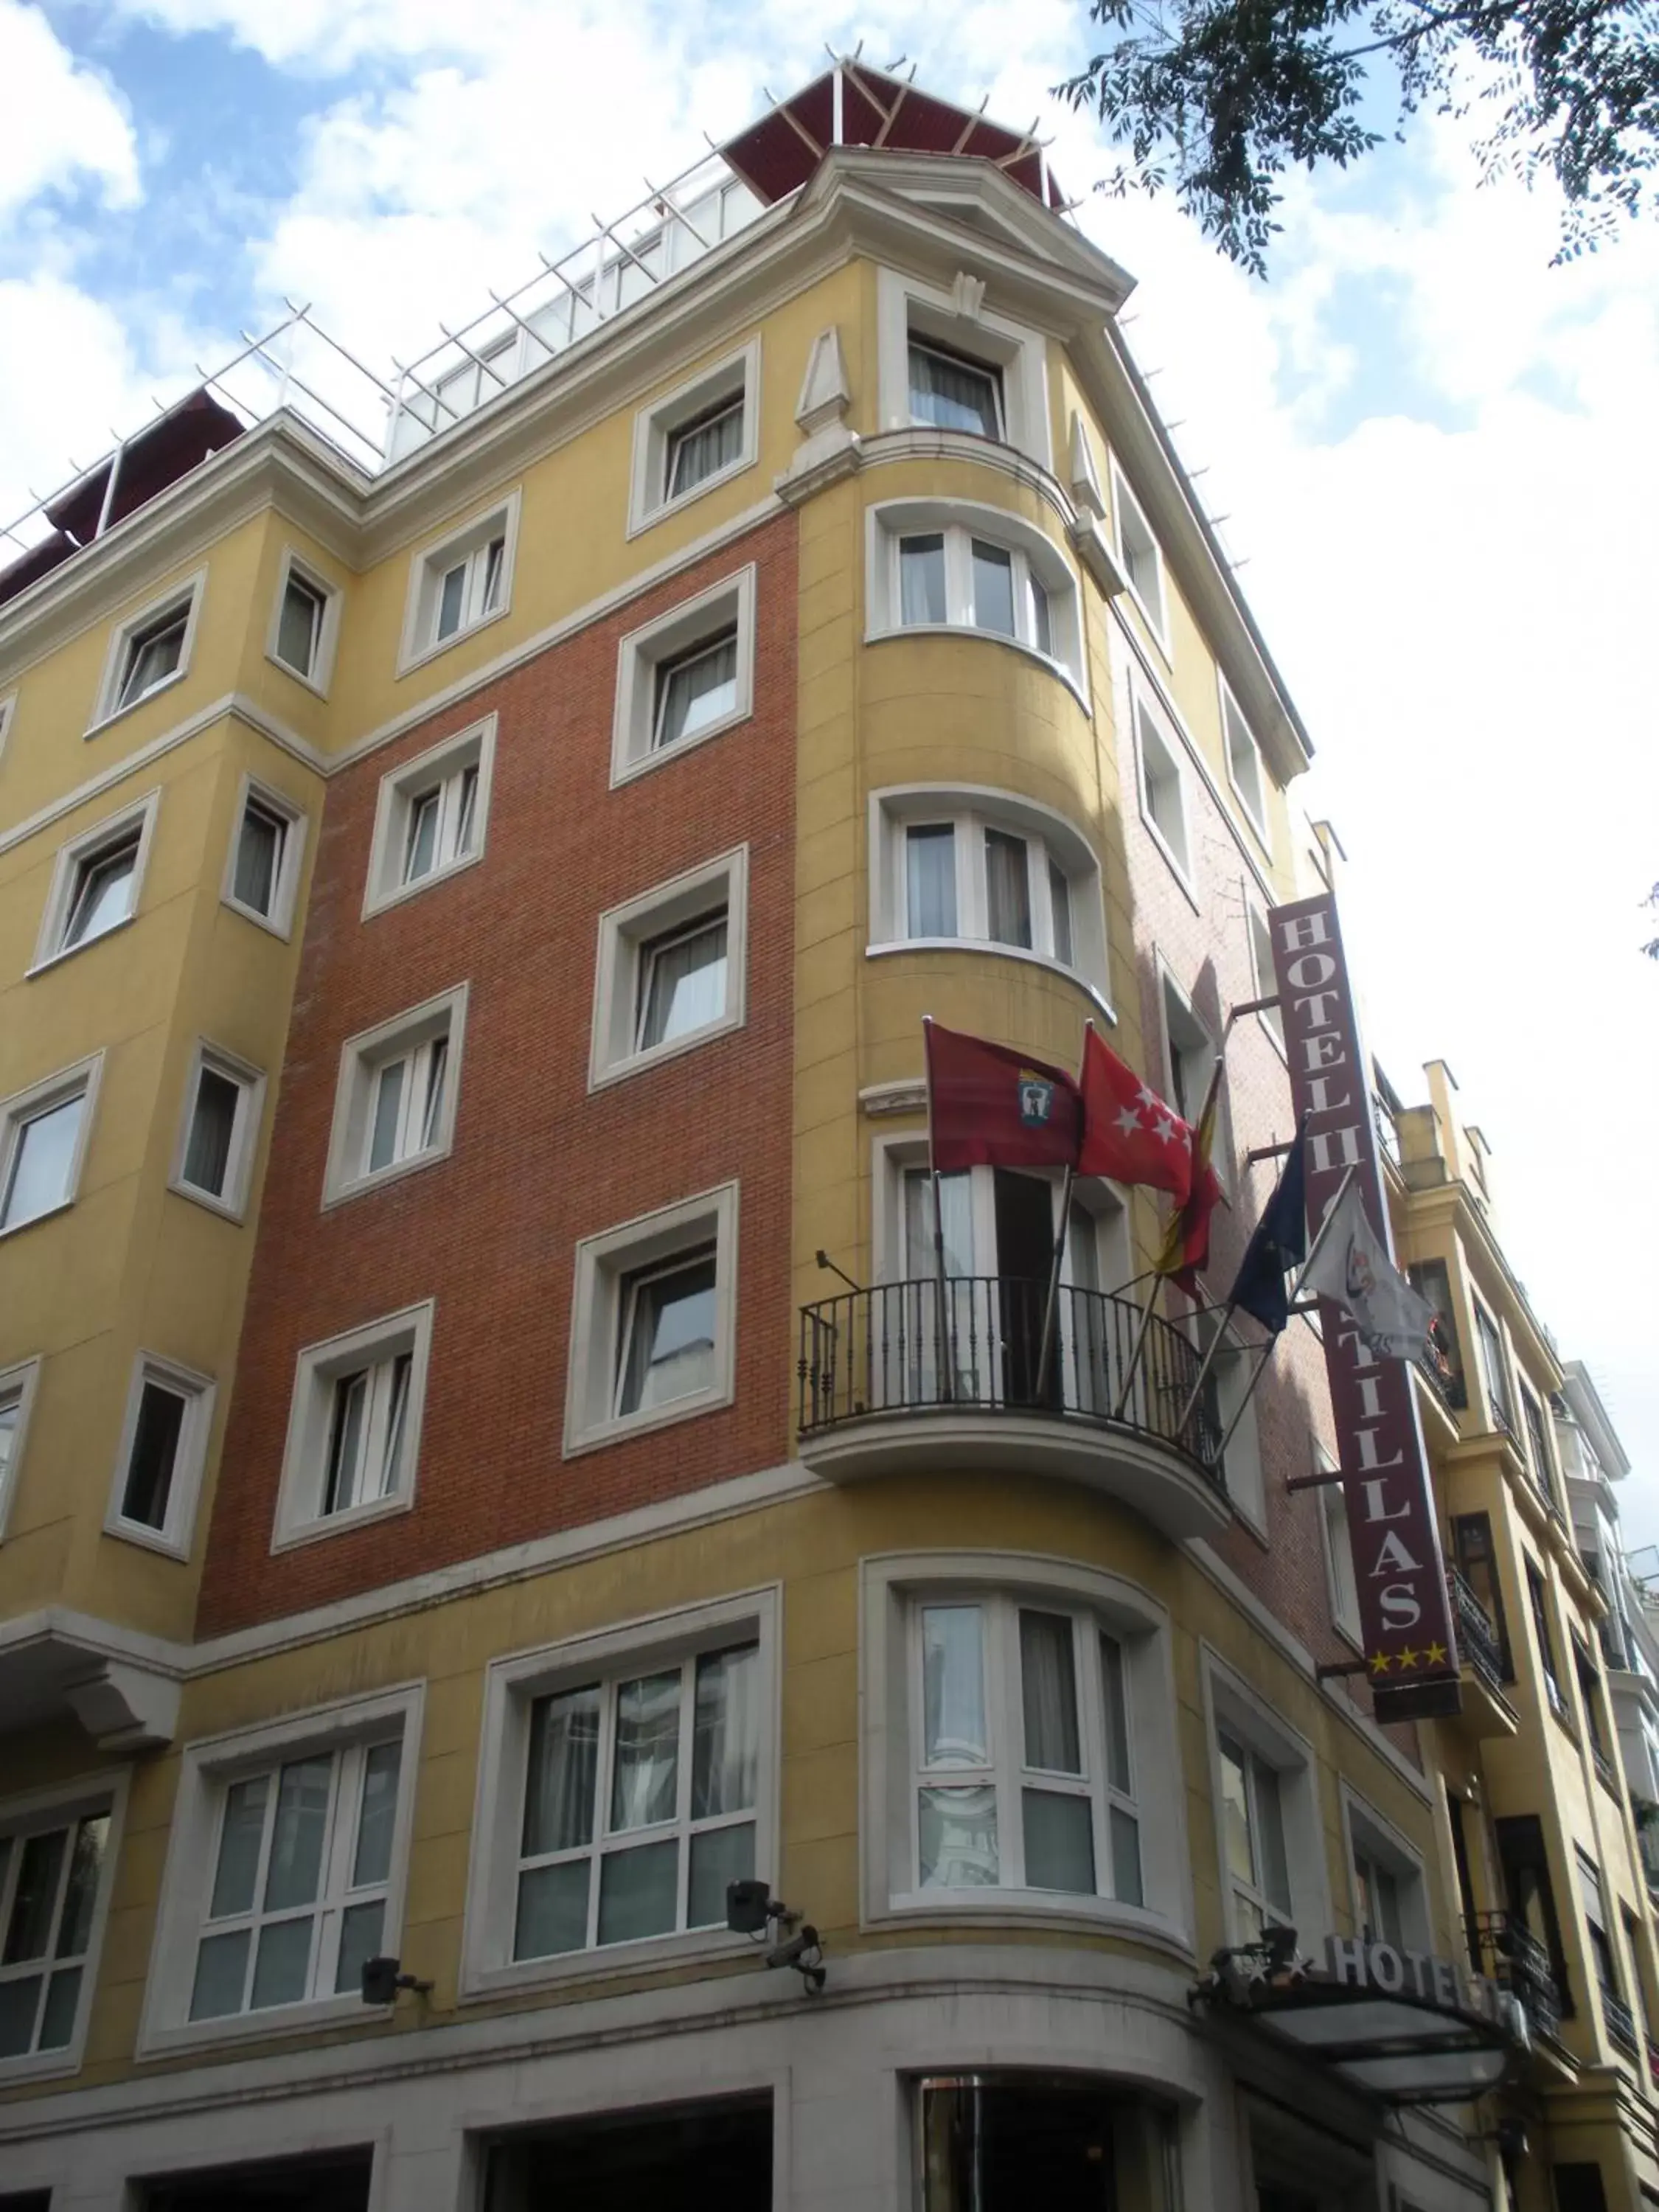 Facade/entrance, Property Building in II Castillas Madrid